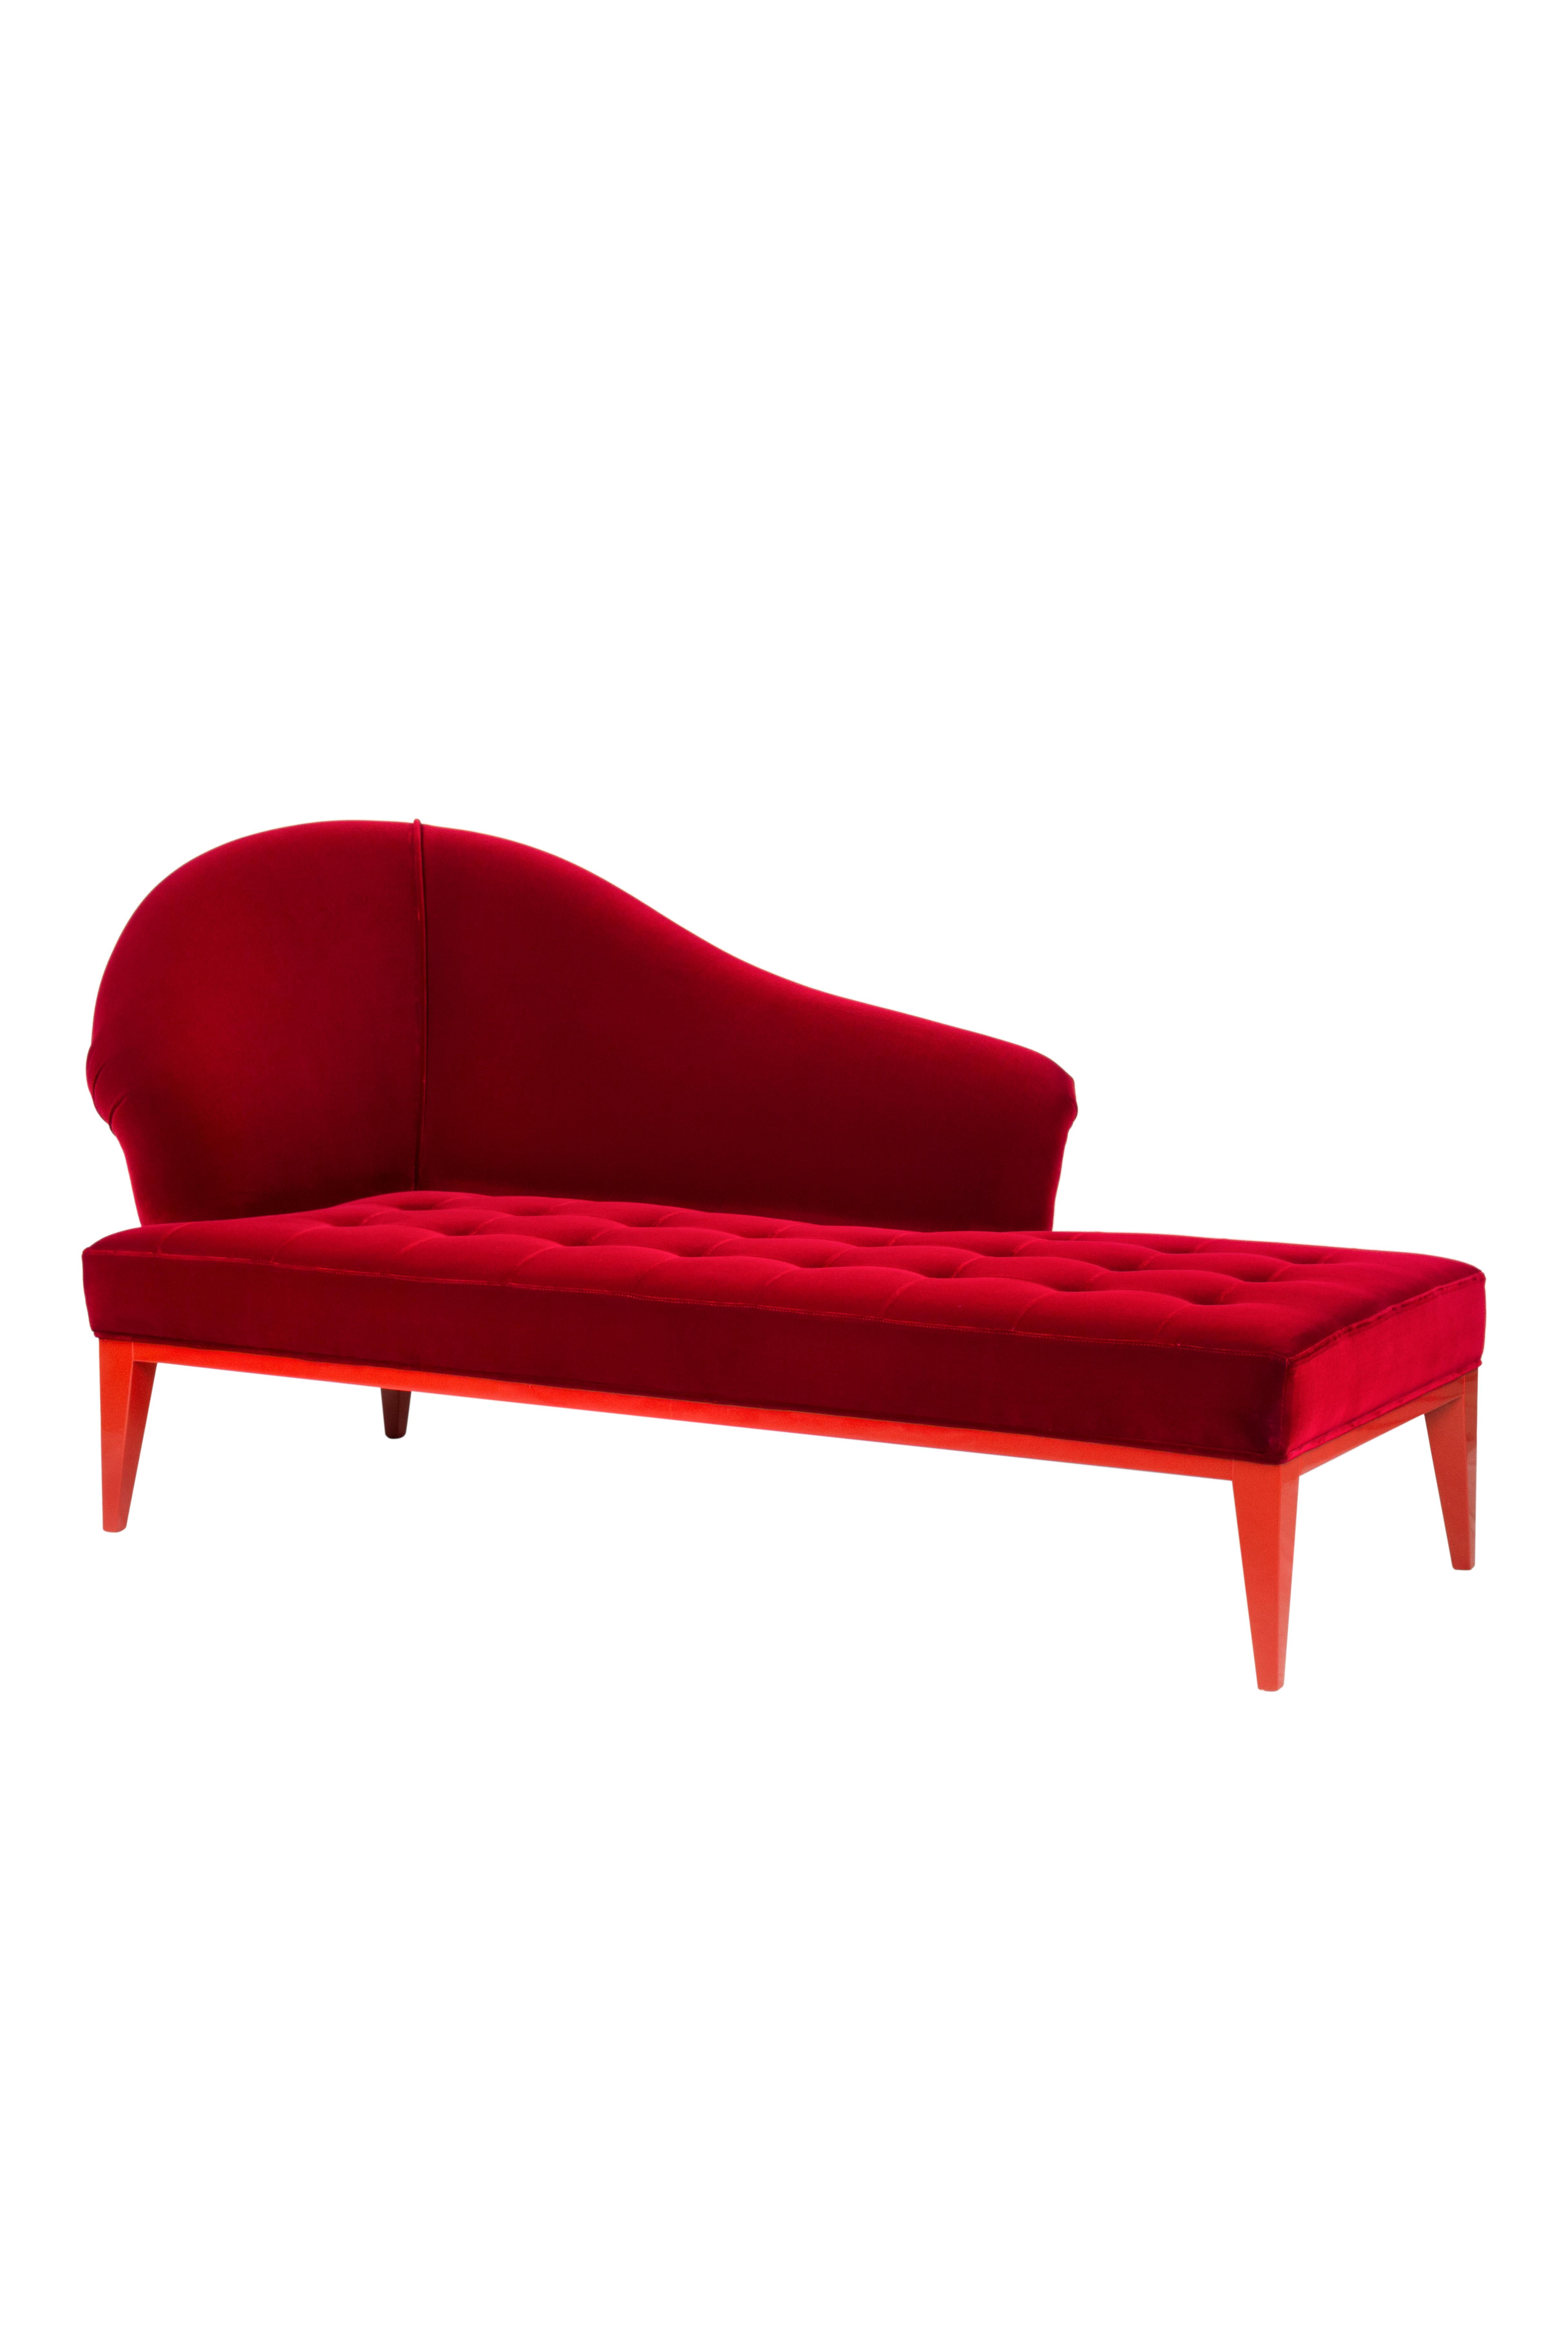 Brass Art Deco Sumy Chaise Longue DEDAR Red Cotton Velvet Handmade Portugal Greenapple For Sale